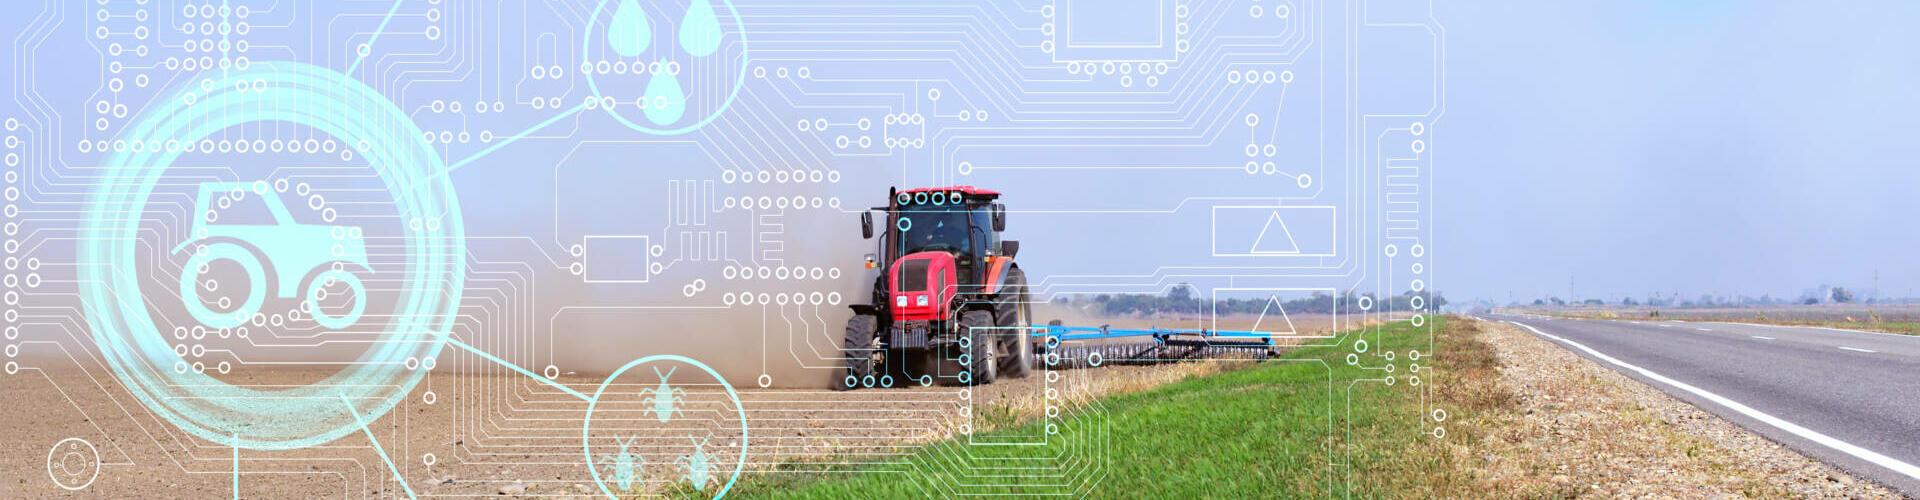 Digitalisierung in der Landwirtschaft und grüne Branche